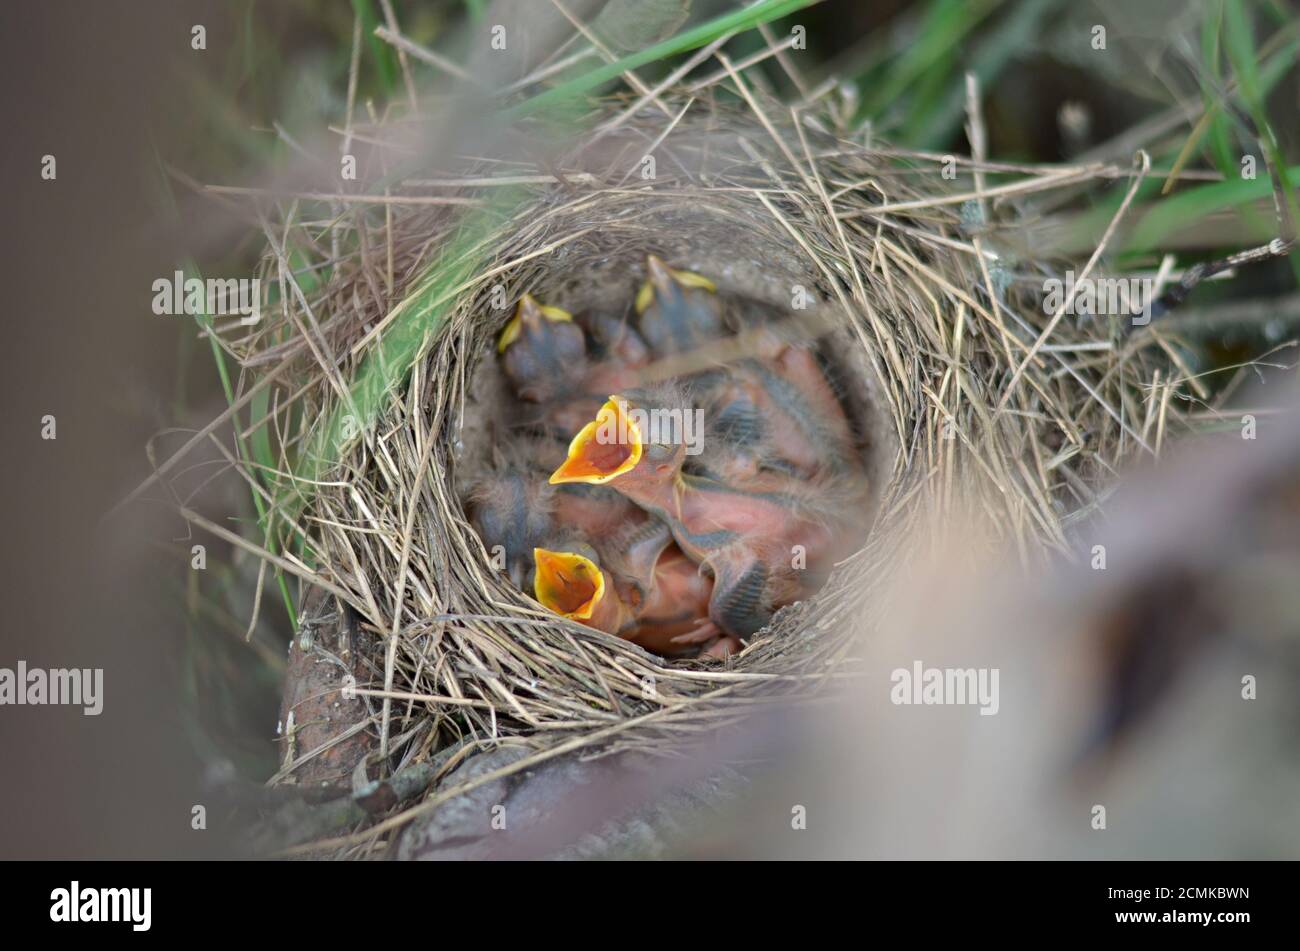 Die Nestlinge eines Song Thrush (Turdus philomelos) im Nest in ihrem natürlichen Lebensraum. Fauna der Ukraine. Geringe Schärfentiefe, Nahaufnahme. Stockfoto